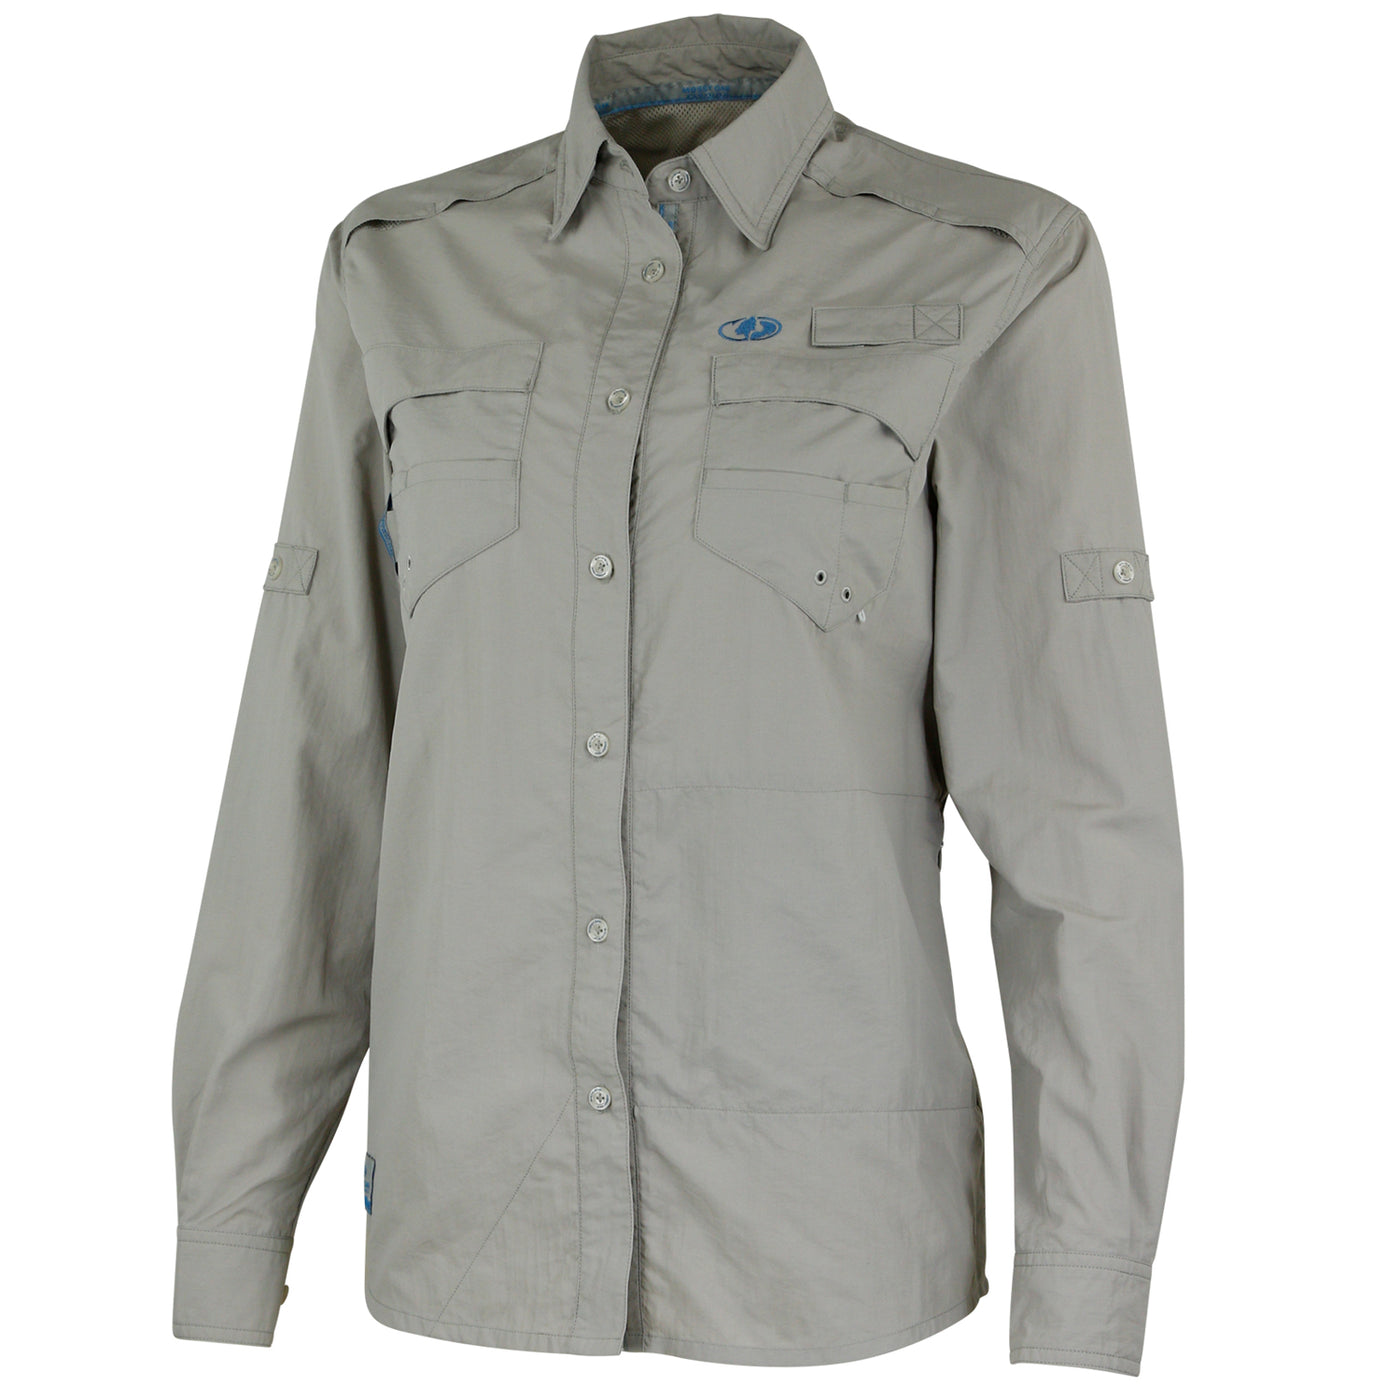 Mossy Oak Women's Long Sleeve Fishing Shirt Button Down Cool Grey